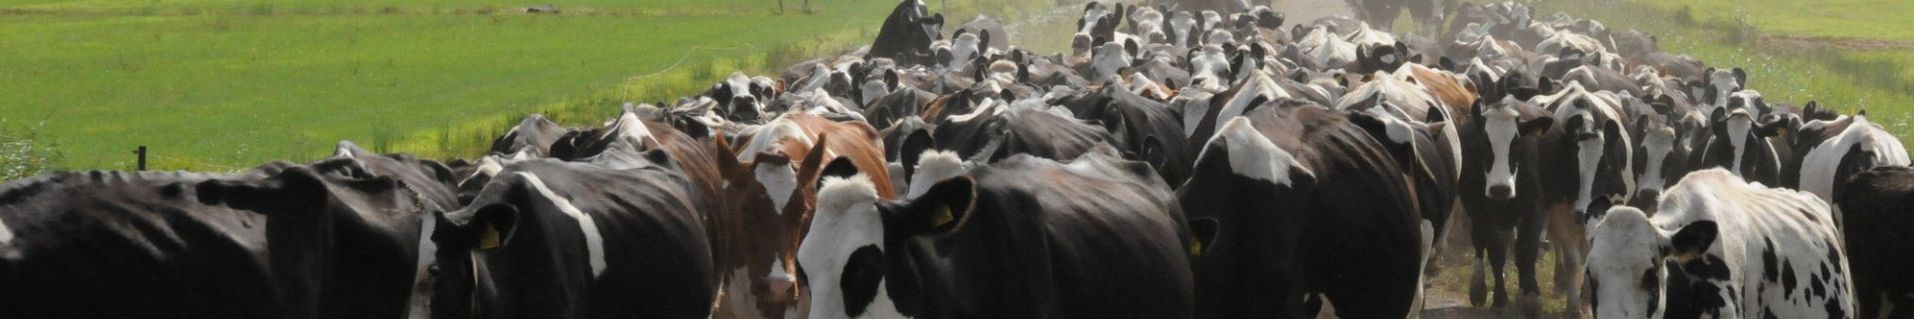 Koeverkeer in de stal bepaalt de juiste route en routine van de koe